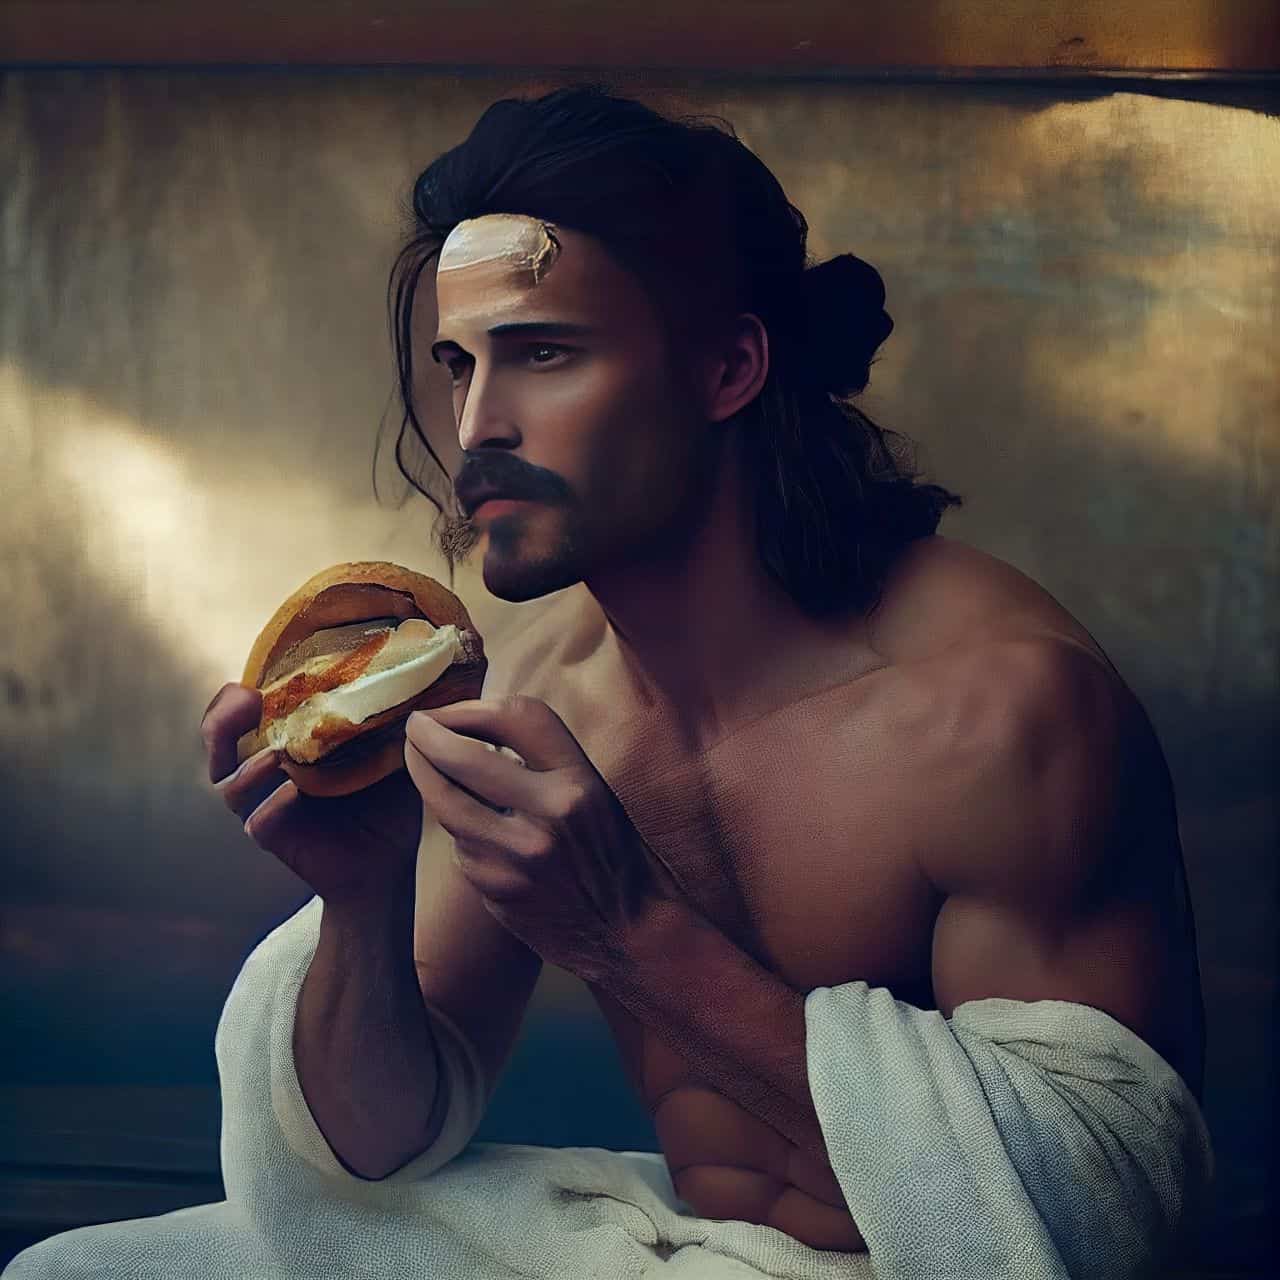 jesus eating a hamburger